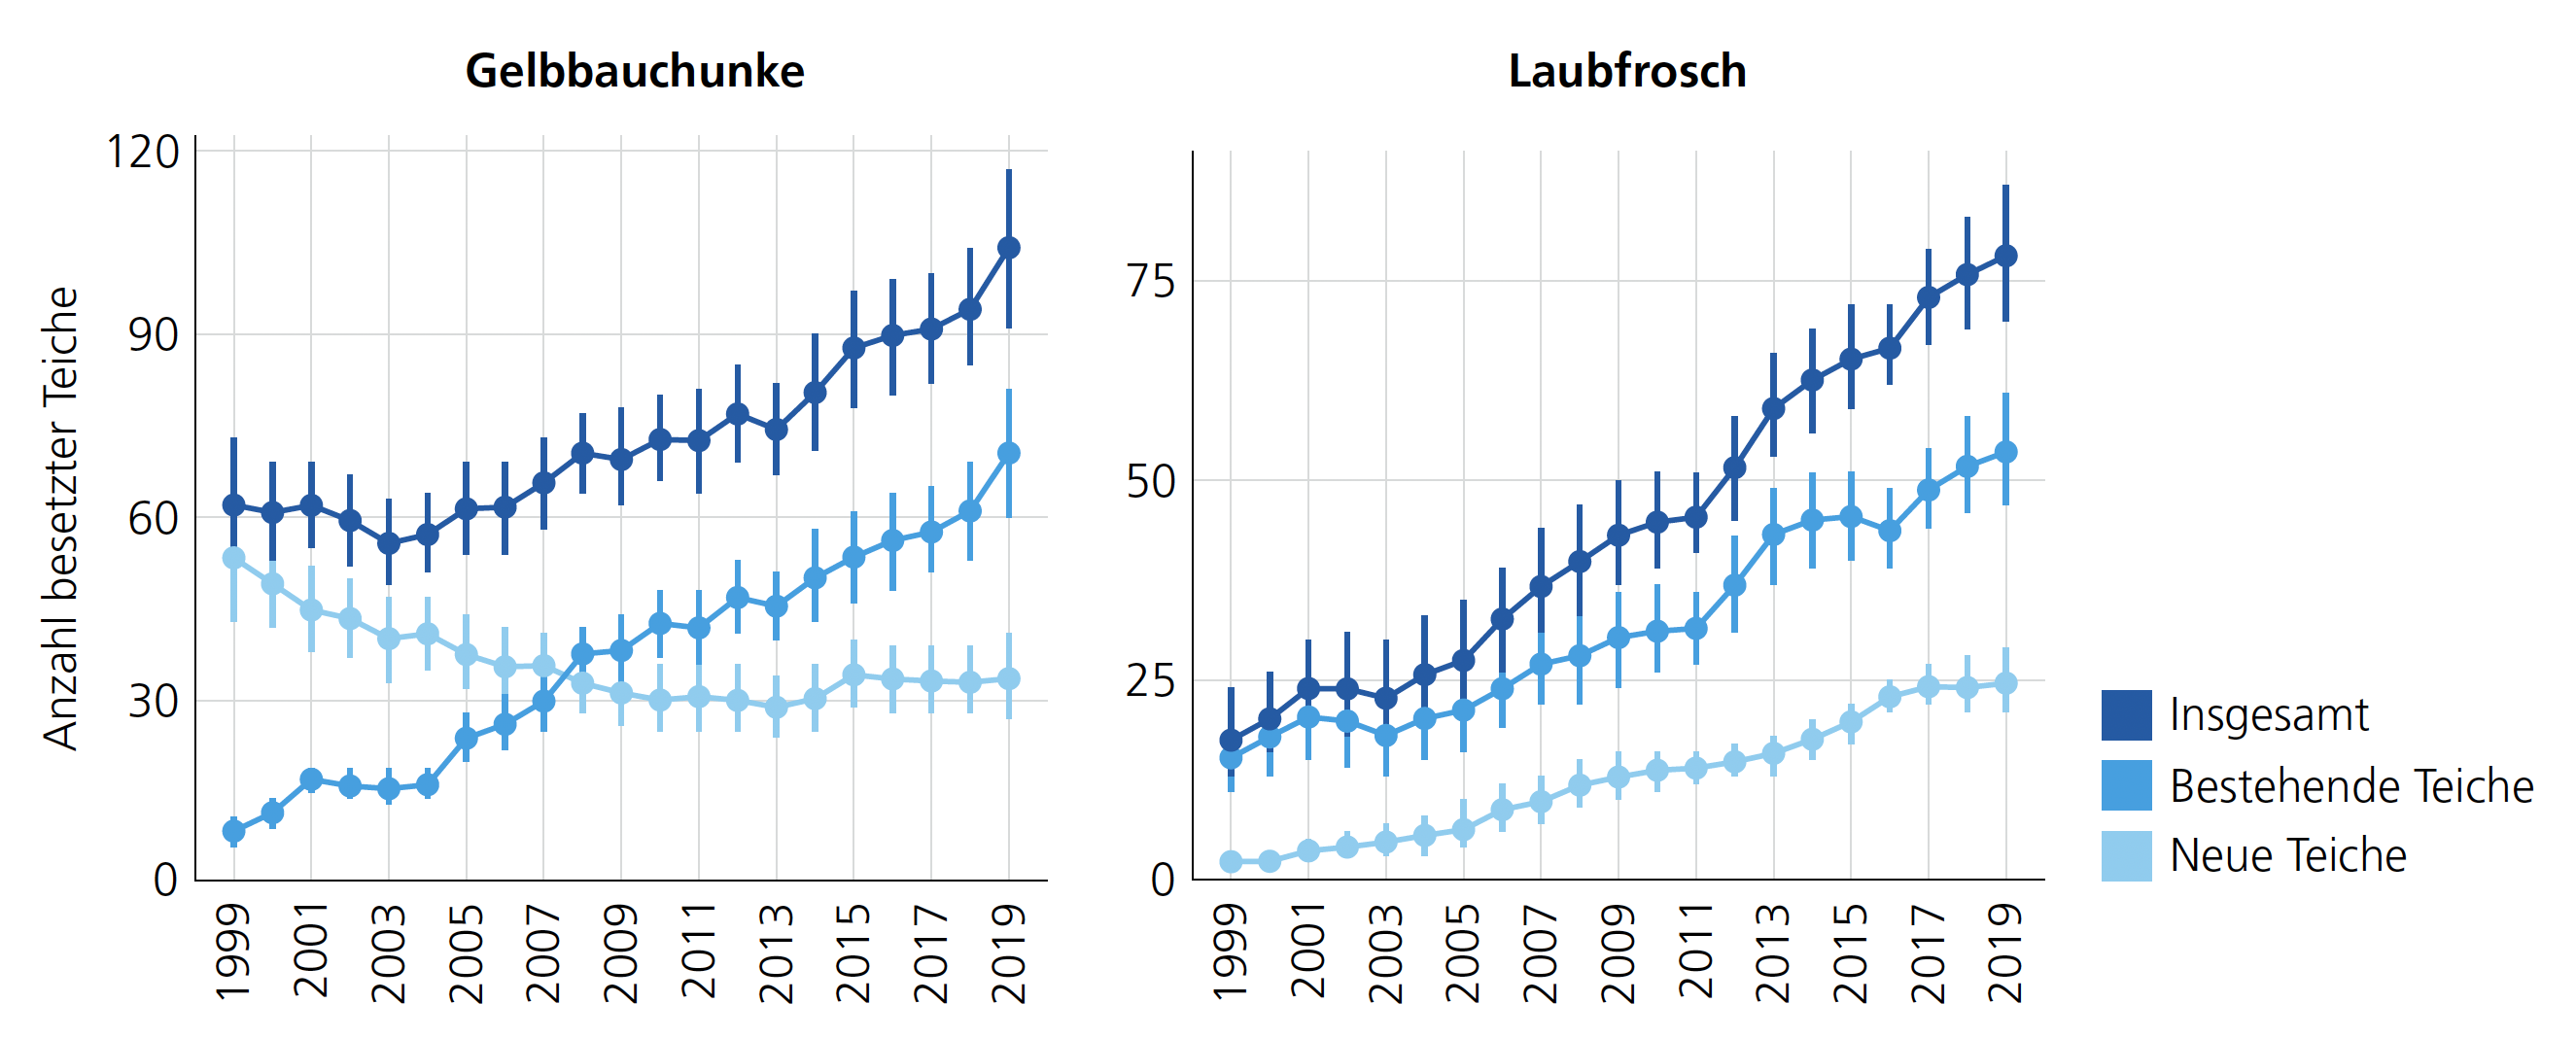 zwei Liniendiagramme, welche die Zunahme der von Gelbbauchunken und Laubfröschen besetzten Teiche im Kanton Aargau zwischen 1999 und 2019 zeigen